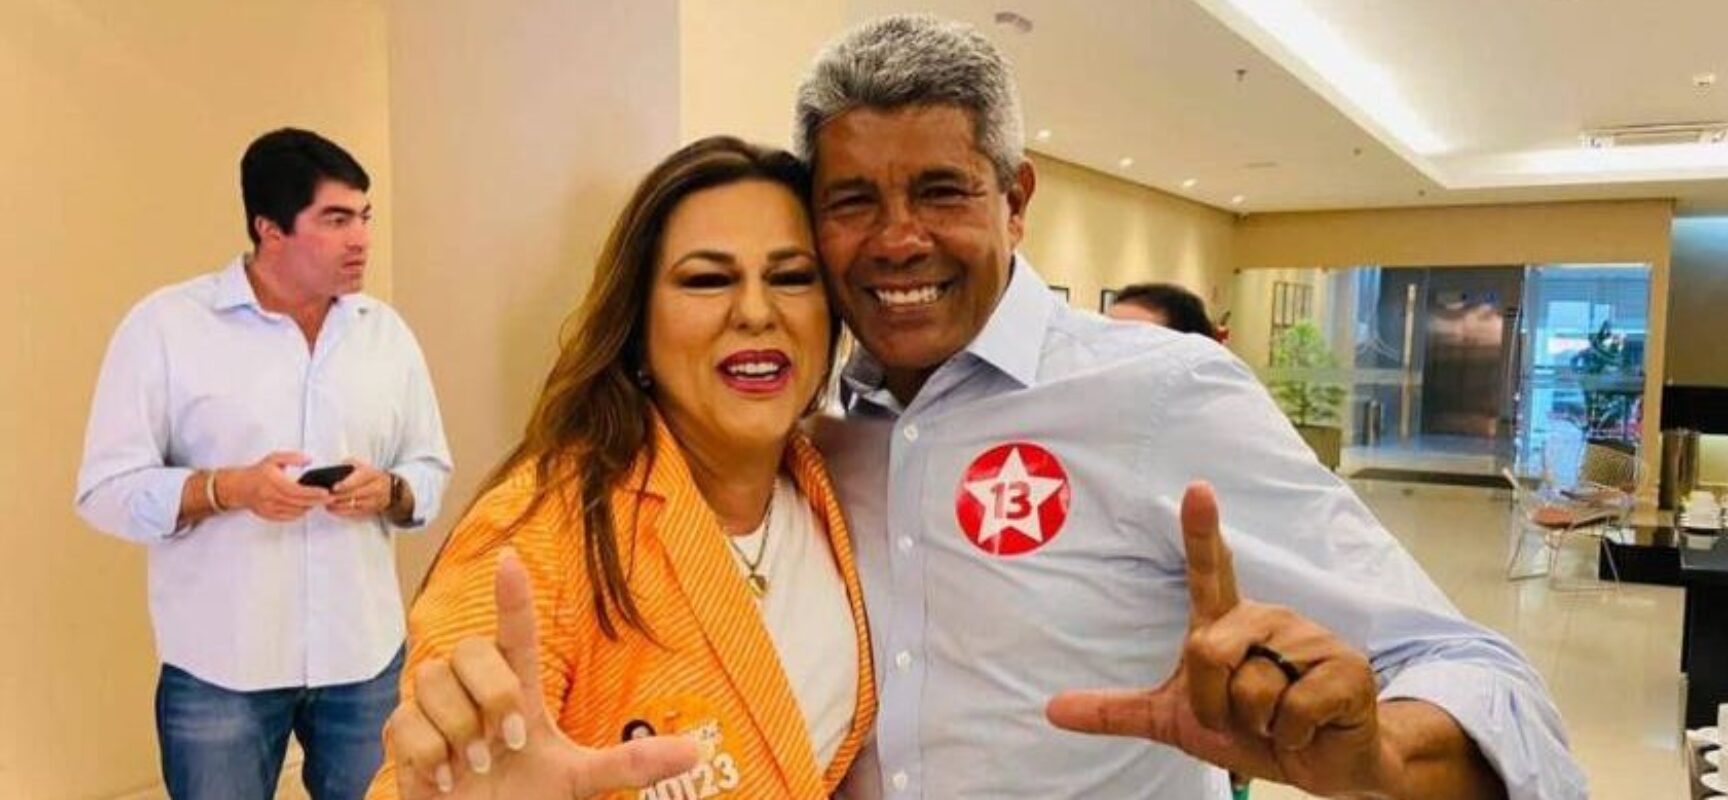 Em Salvador, Soane grava programa eleitoral com Rui e Jerônimo e exalta Time de Lula na Bahia